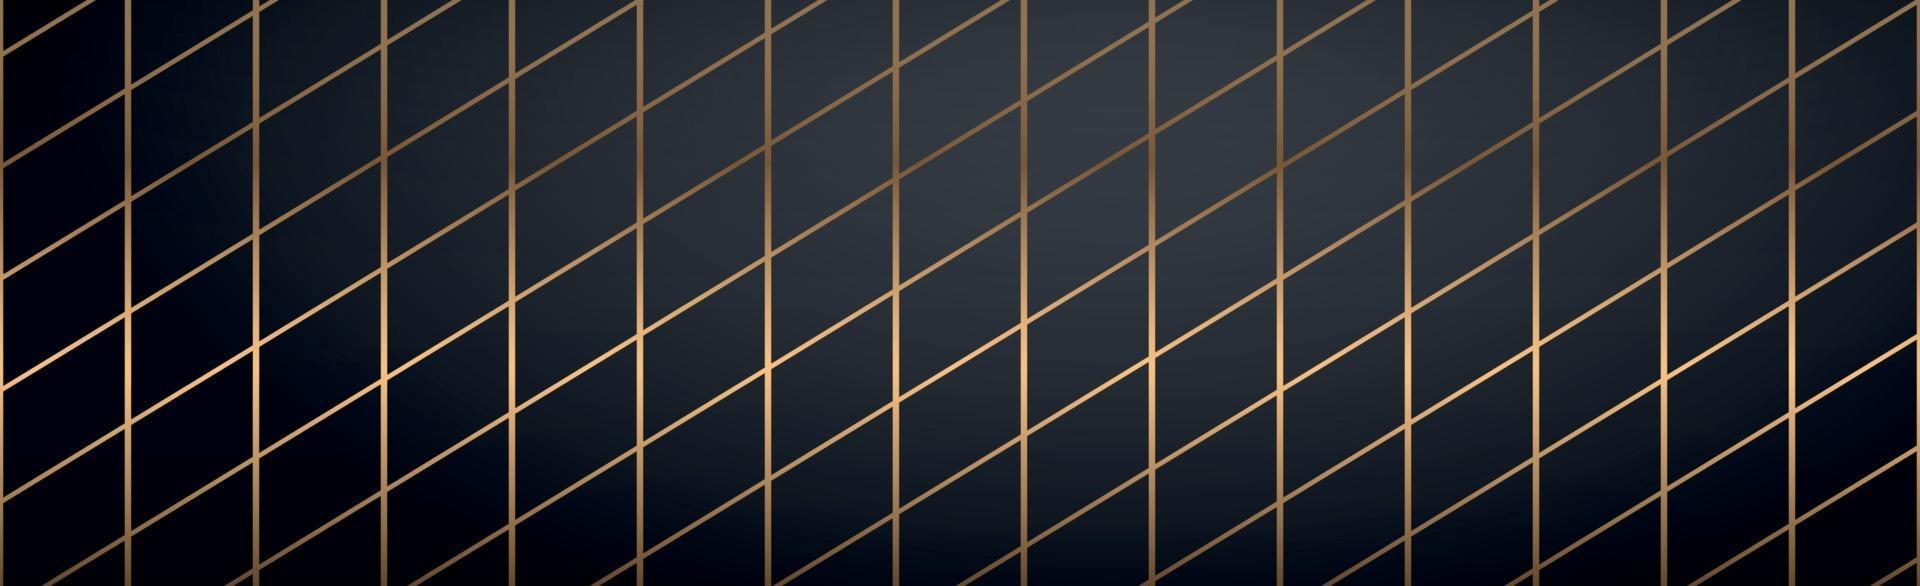 linee dorate astratte su sfondo nero - vettore